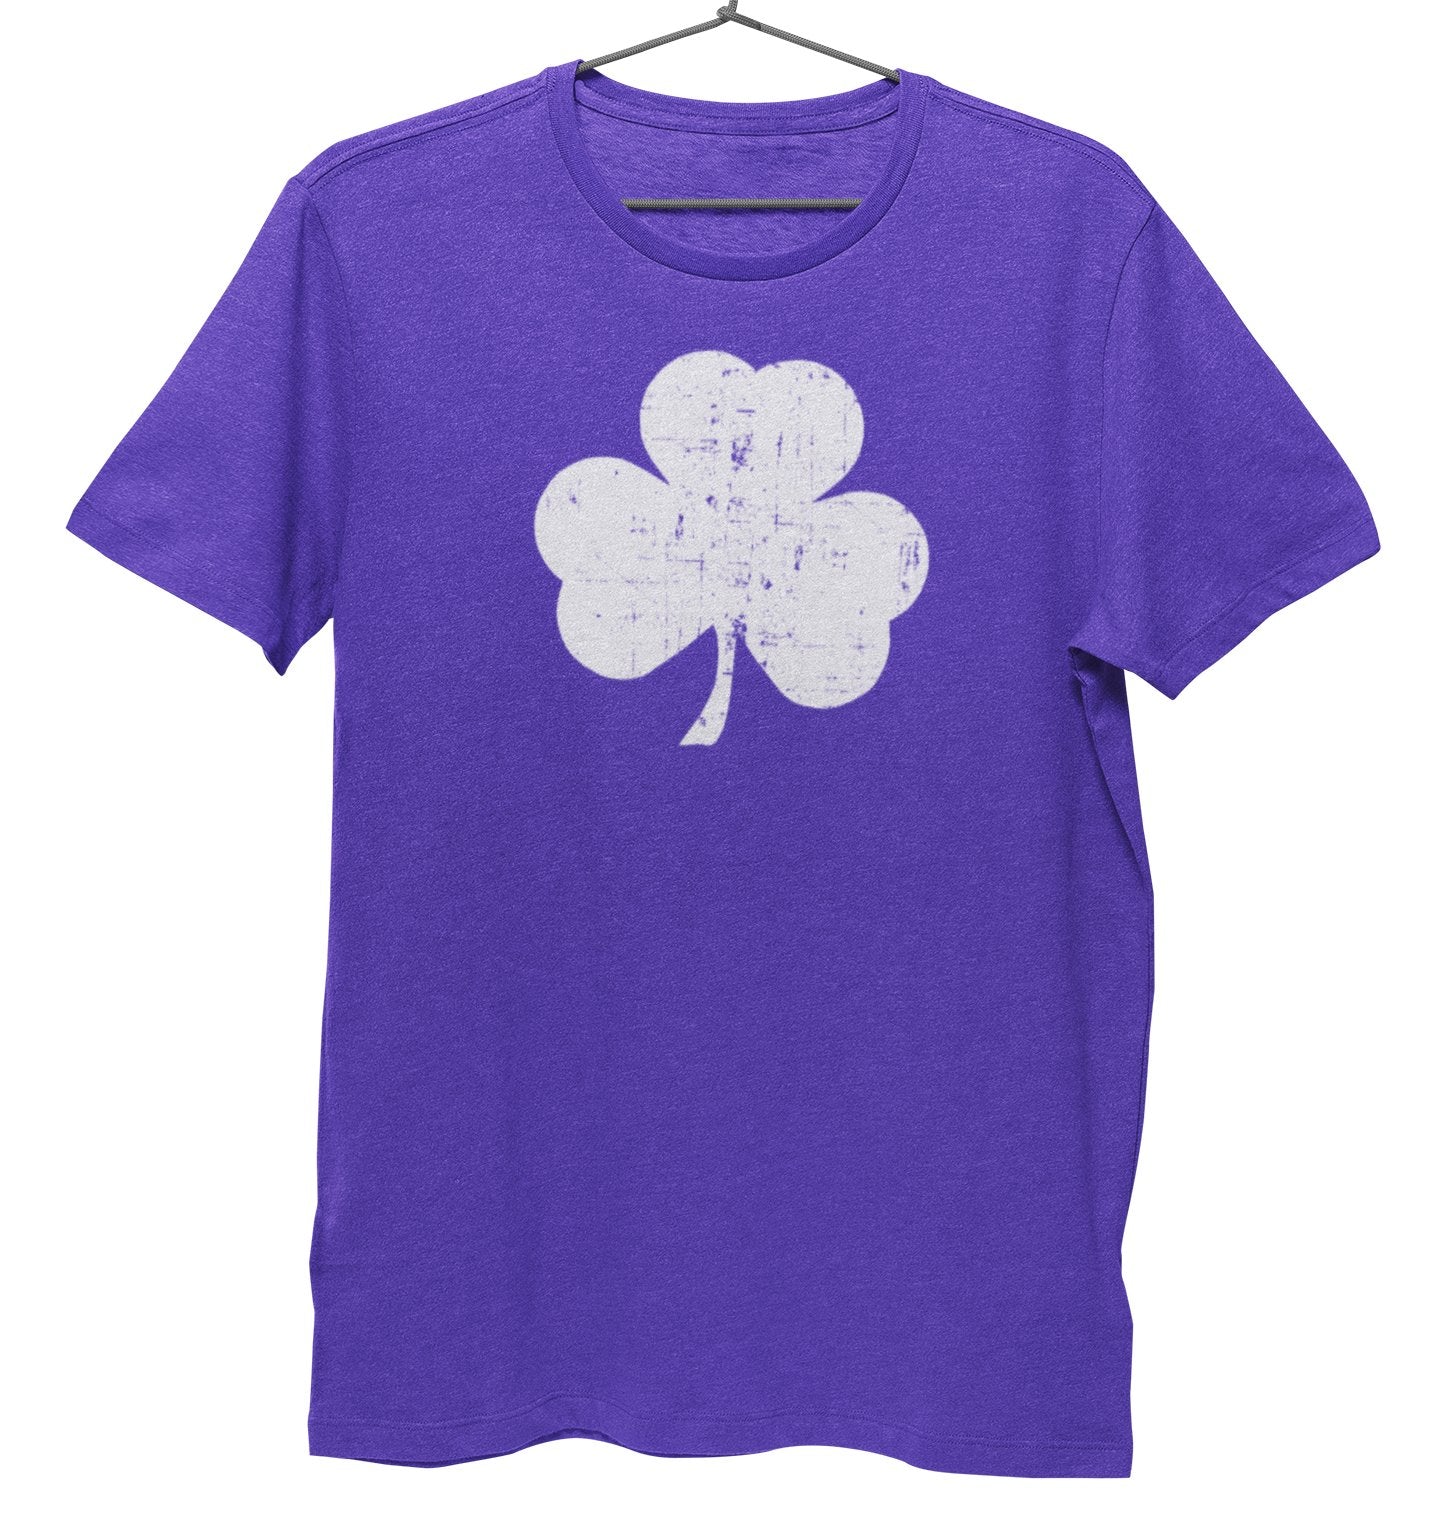 Men's Shamrock Tee Premium Ring-spun T-Shirt (Heather Purple)